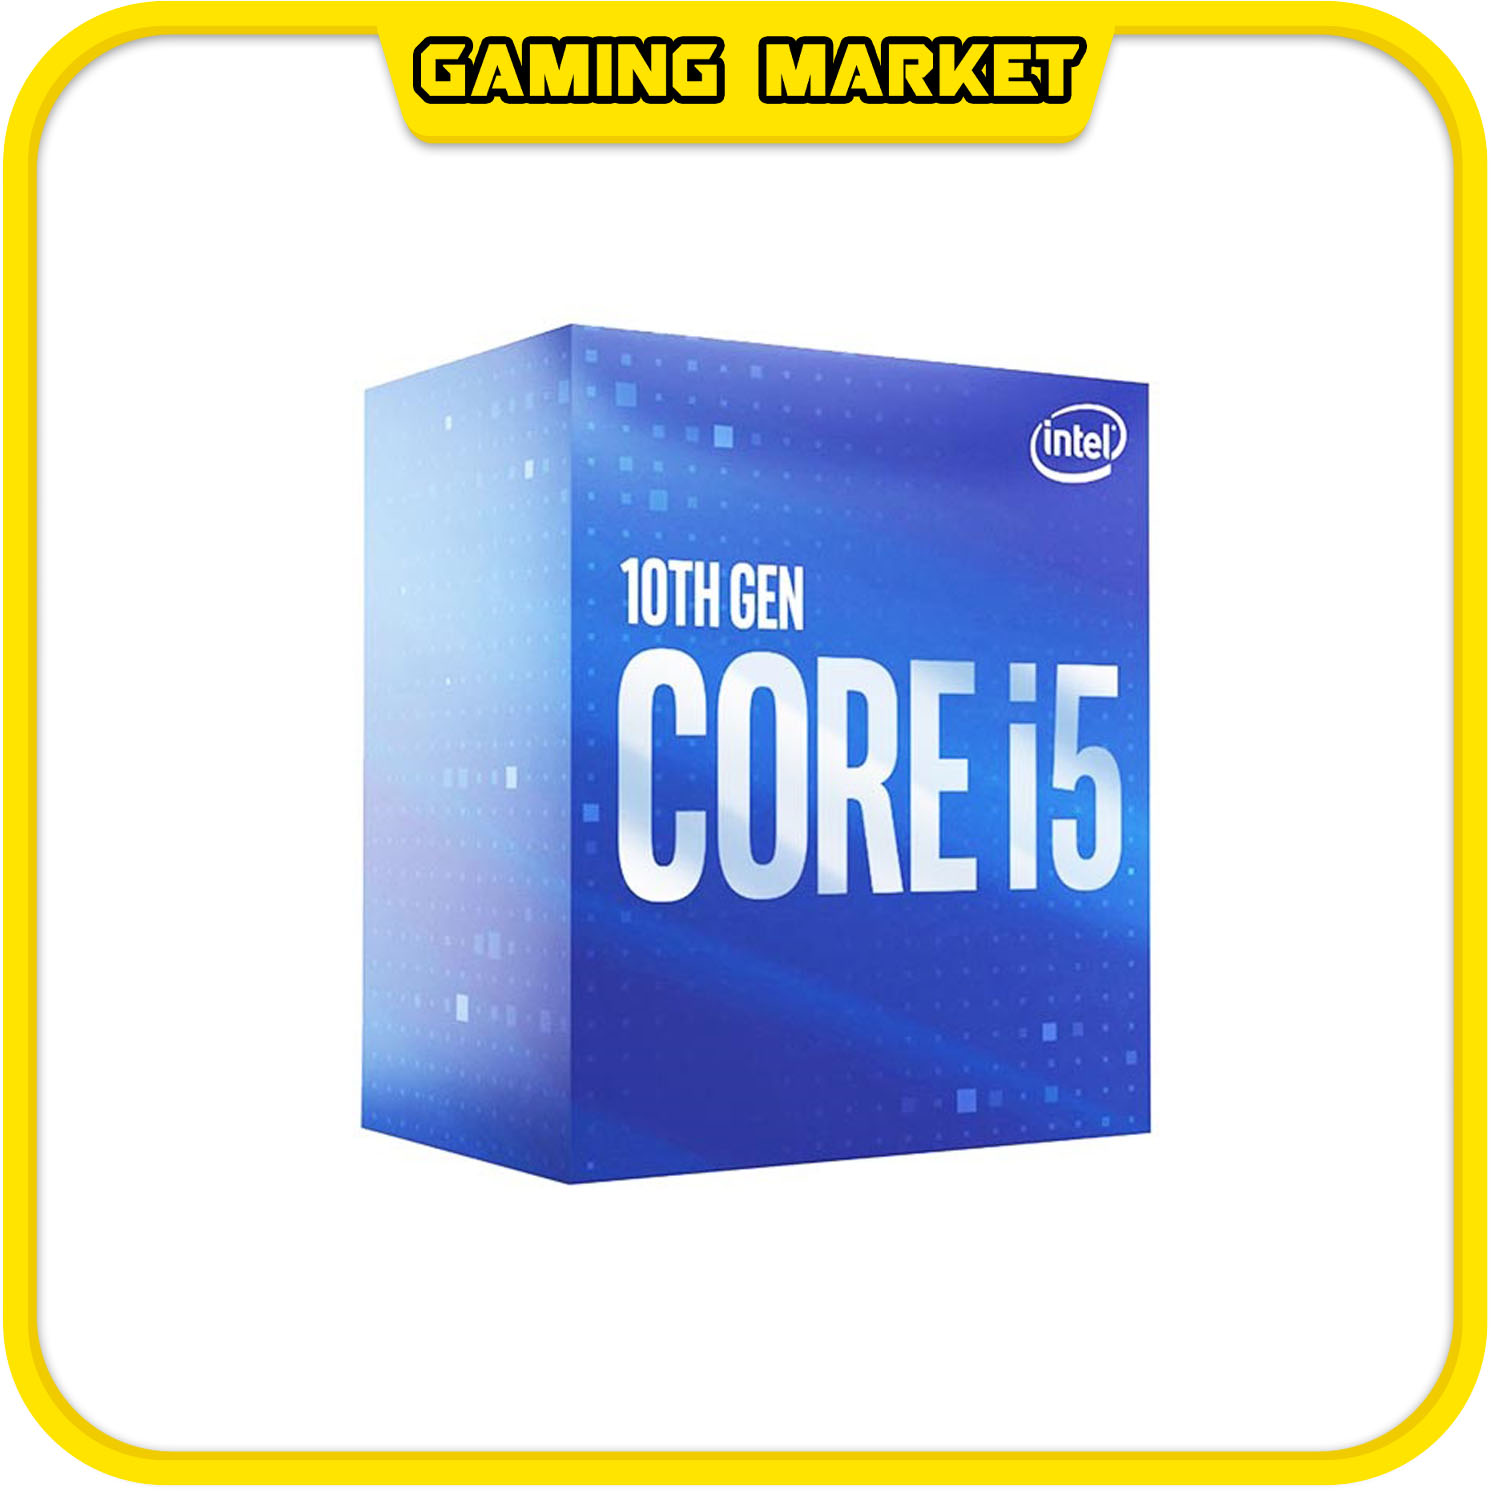 PC CHƠI GAME, ĐỒ HOẠ i5 10400F/RAM 8G DDR4/VGA GIGA GTX 1660 6G SUPER